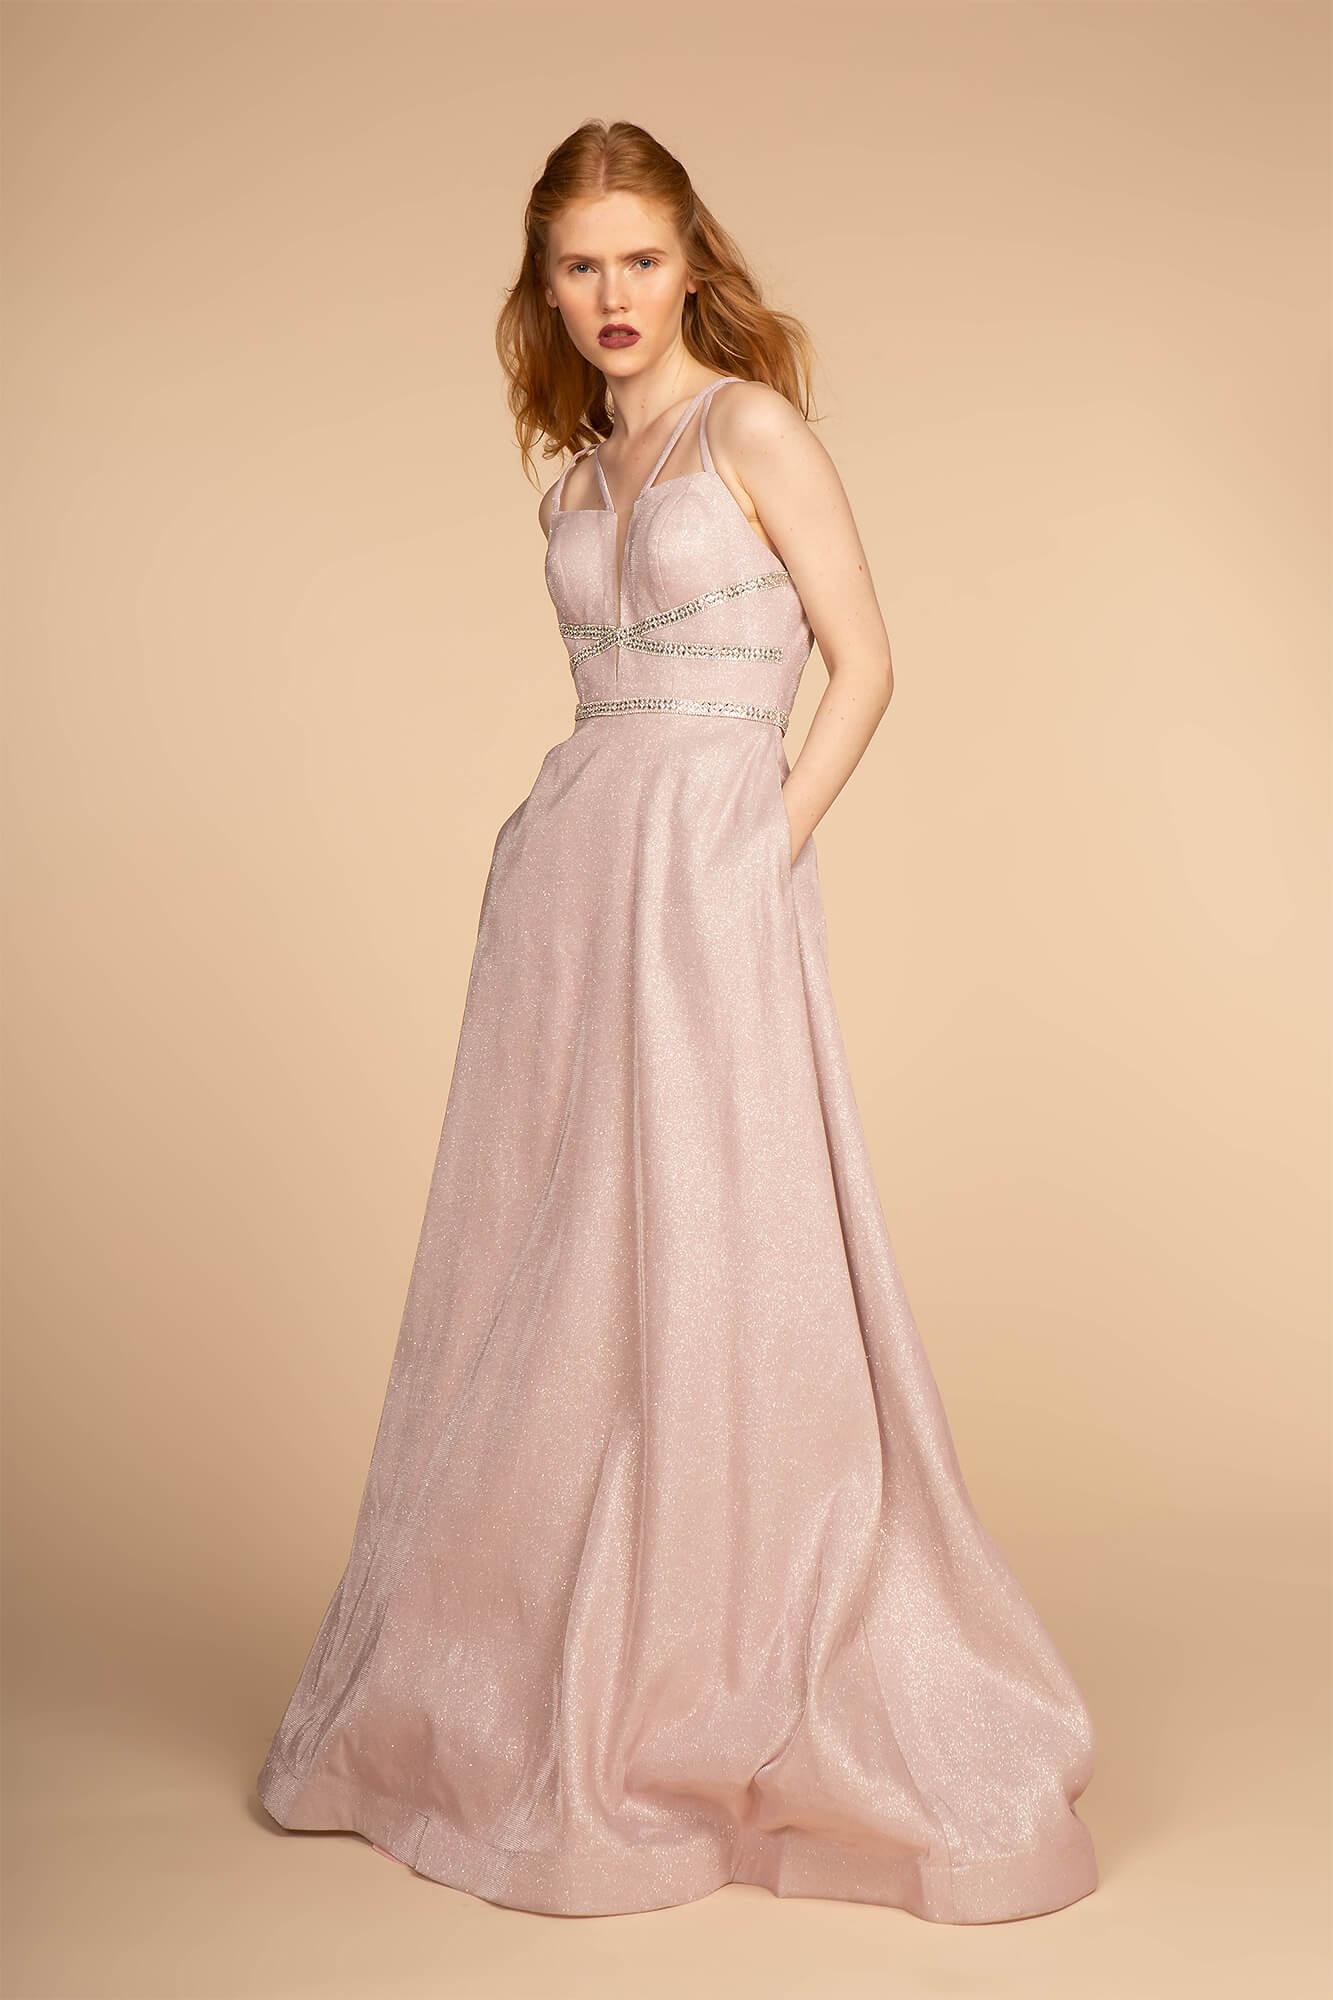 Prom Long Formal Evening Metallic Dress - The Dress Outlet Elizabeth K